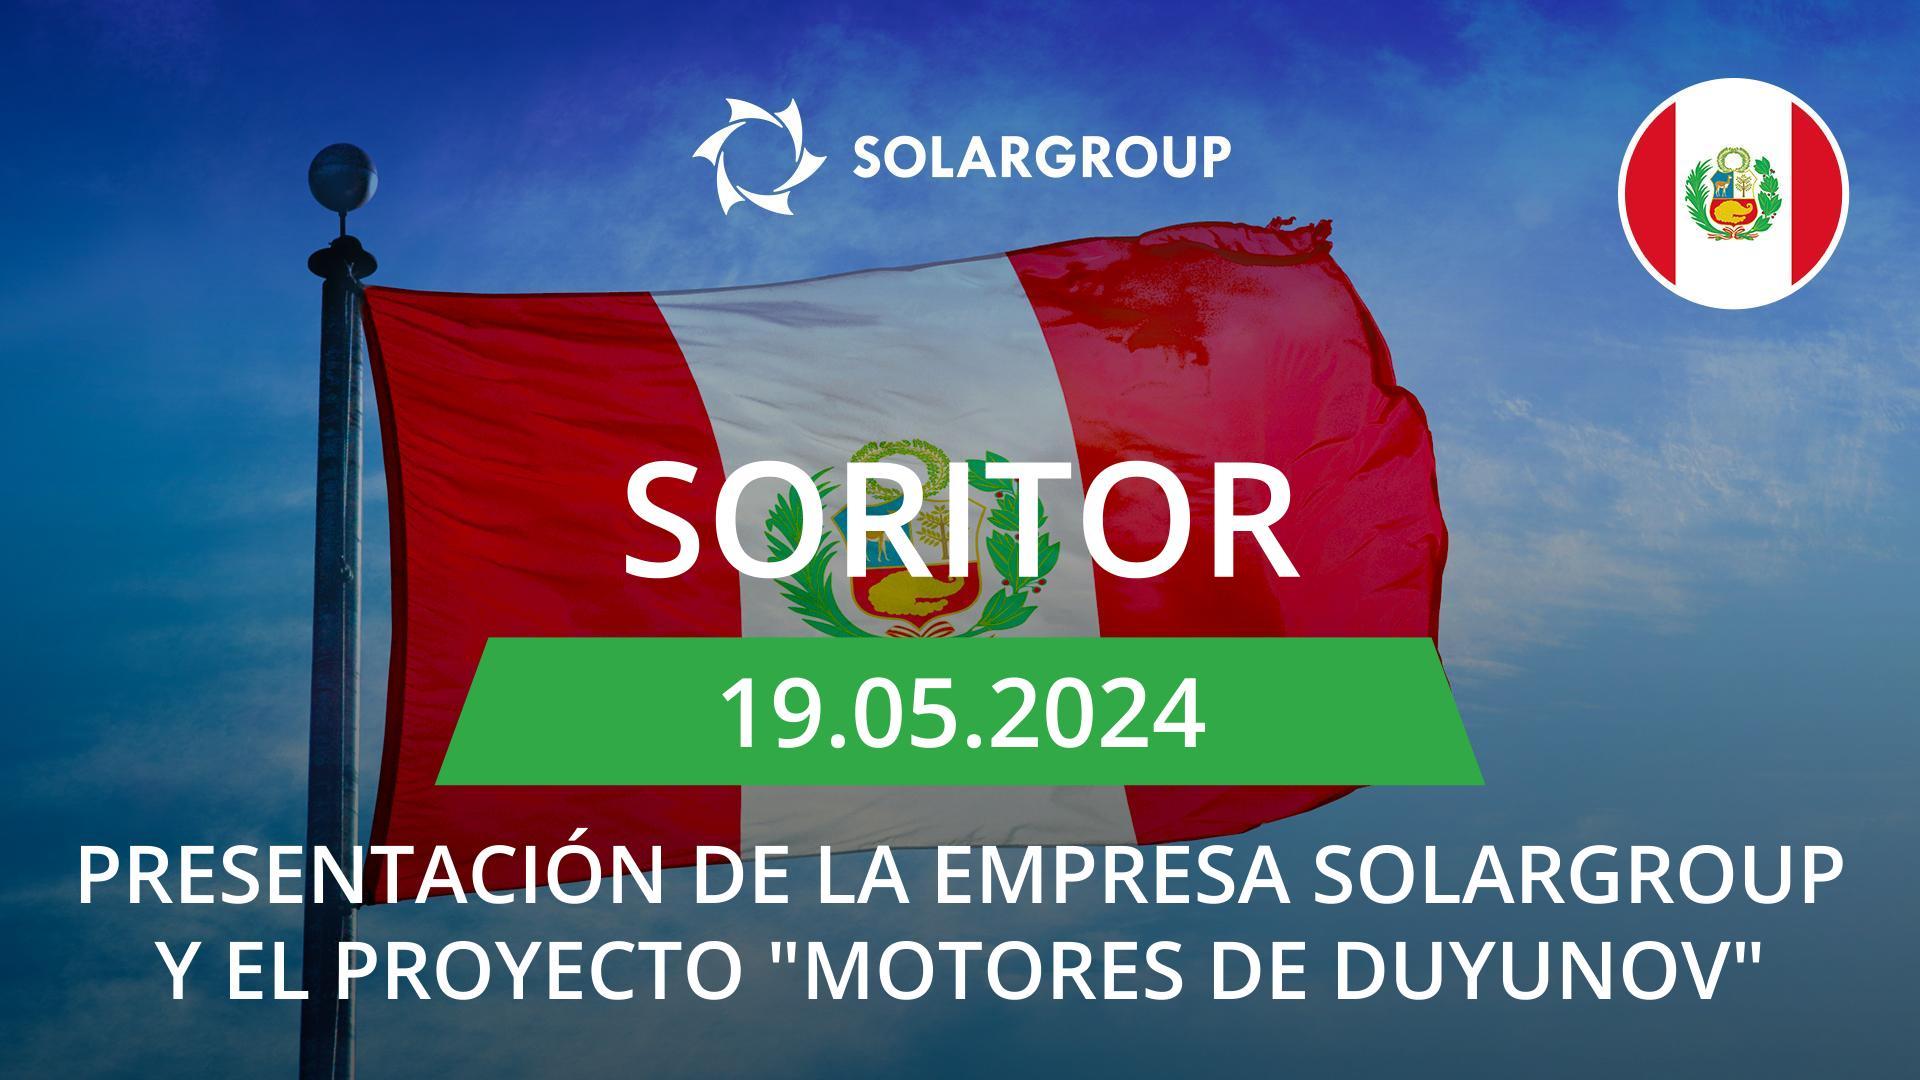 Presentación de la empresa SOLARGROUP y el proyecto "Motores de Duyunov" en Perú (Soritor)